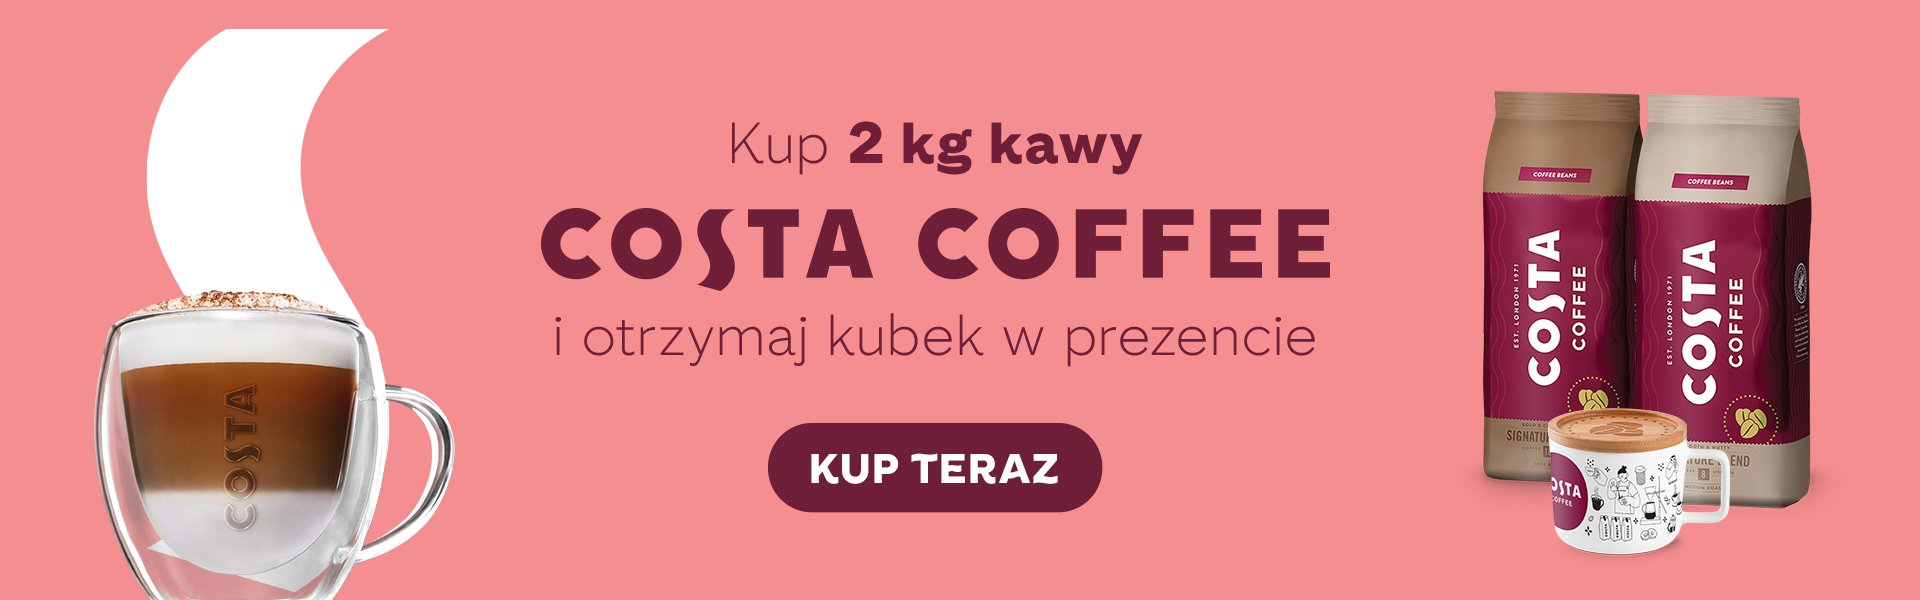 Kup 2 kg kawy Costa Coffee a otrzymasz gratis